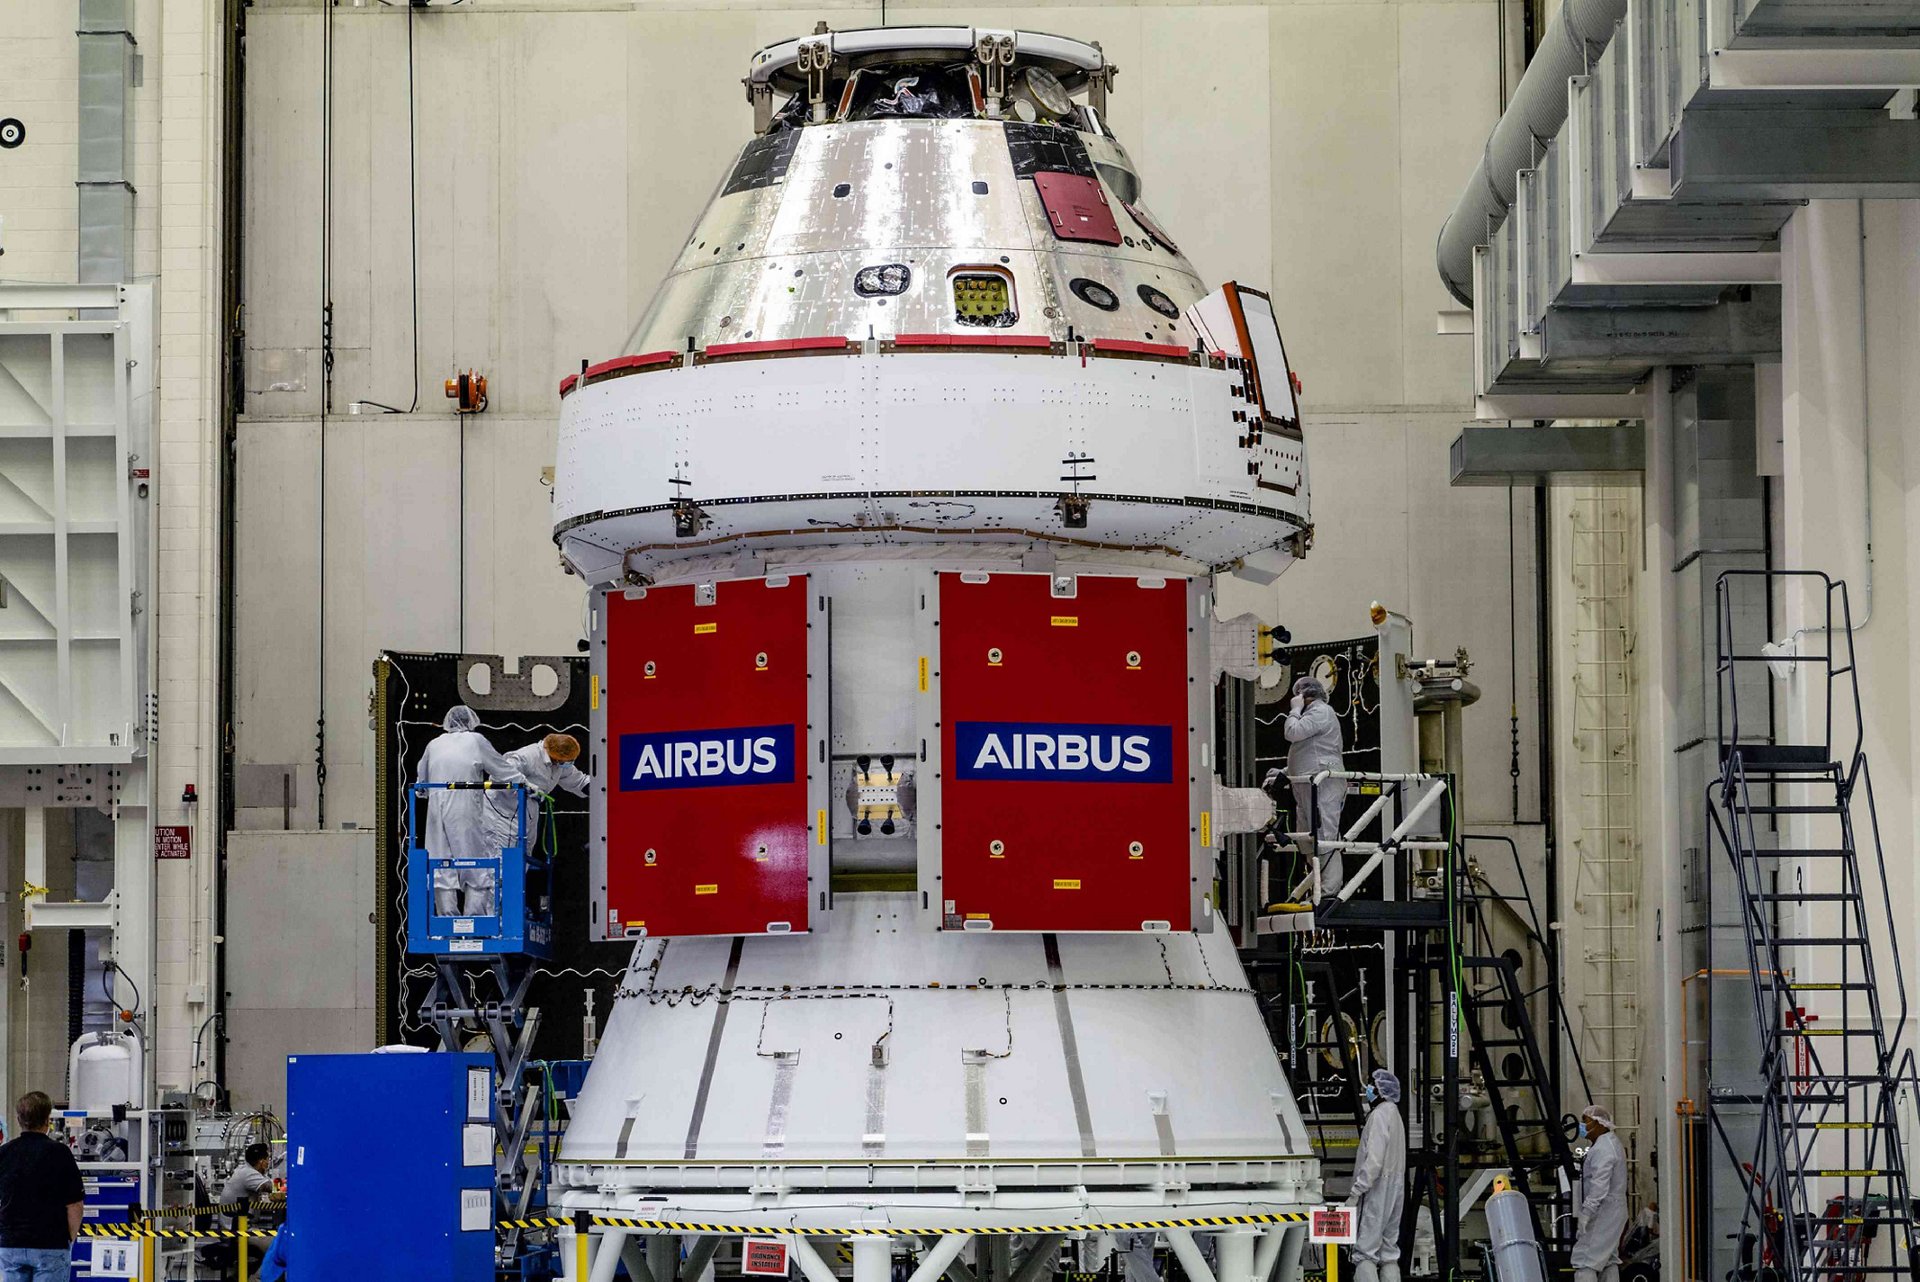 valkyrie spacecraft crew module